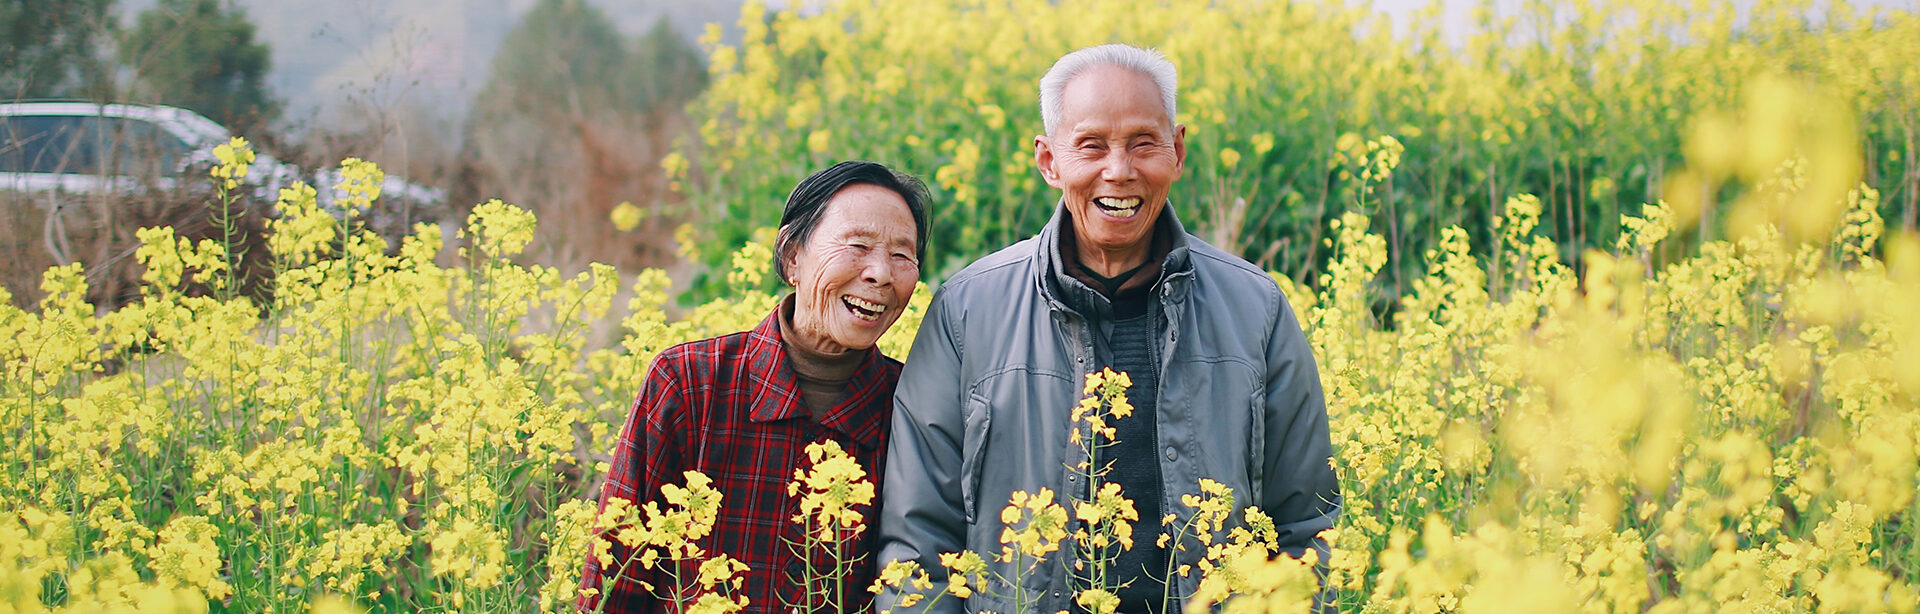 happy elderly couple in field 